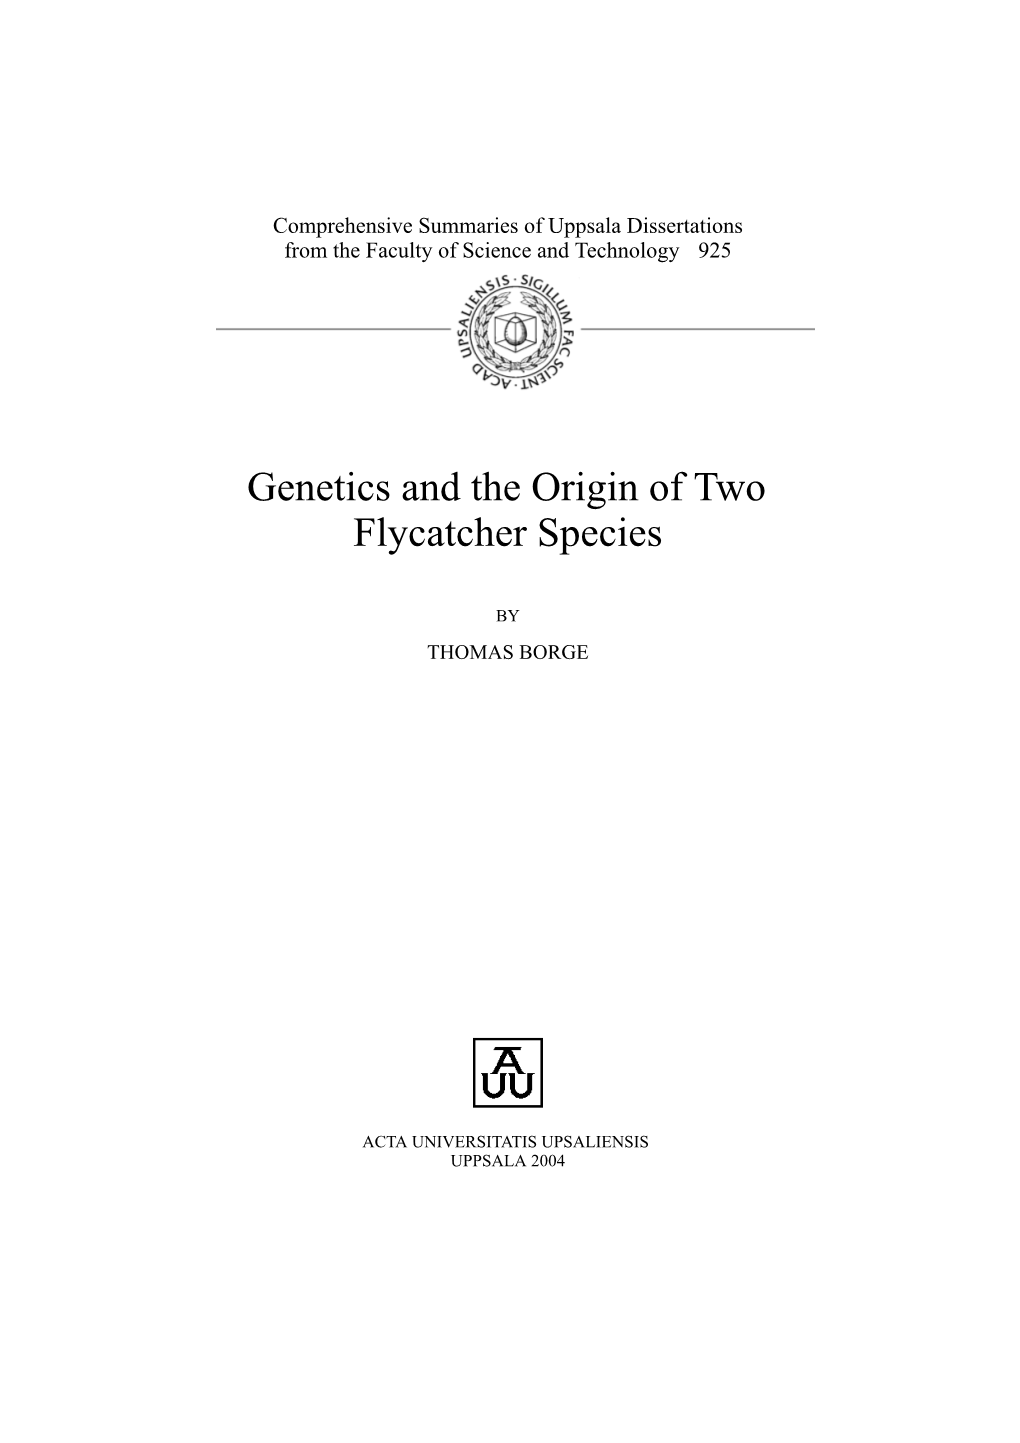 Genetics and the Origin of Two Flycatcher Species